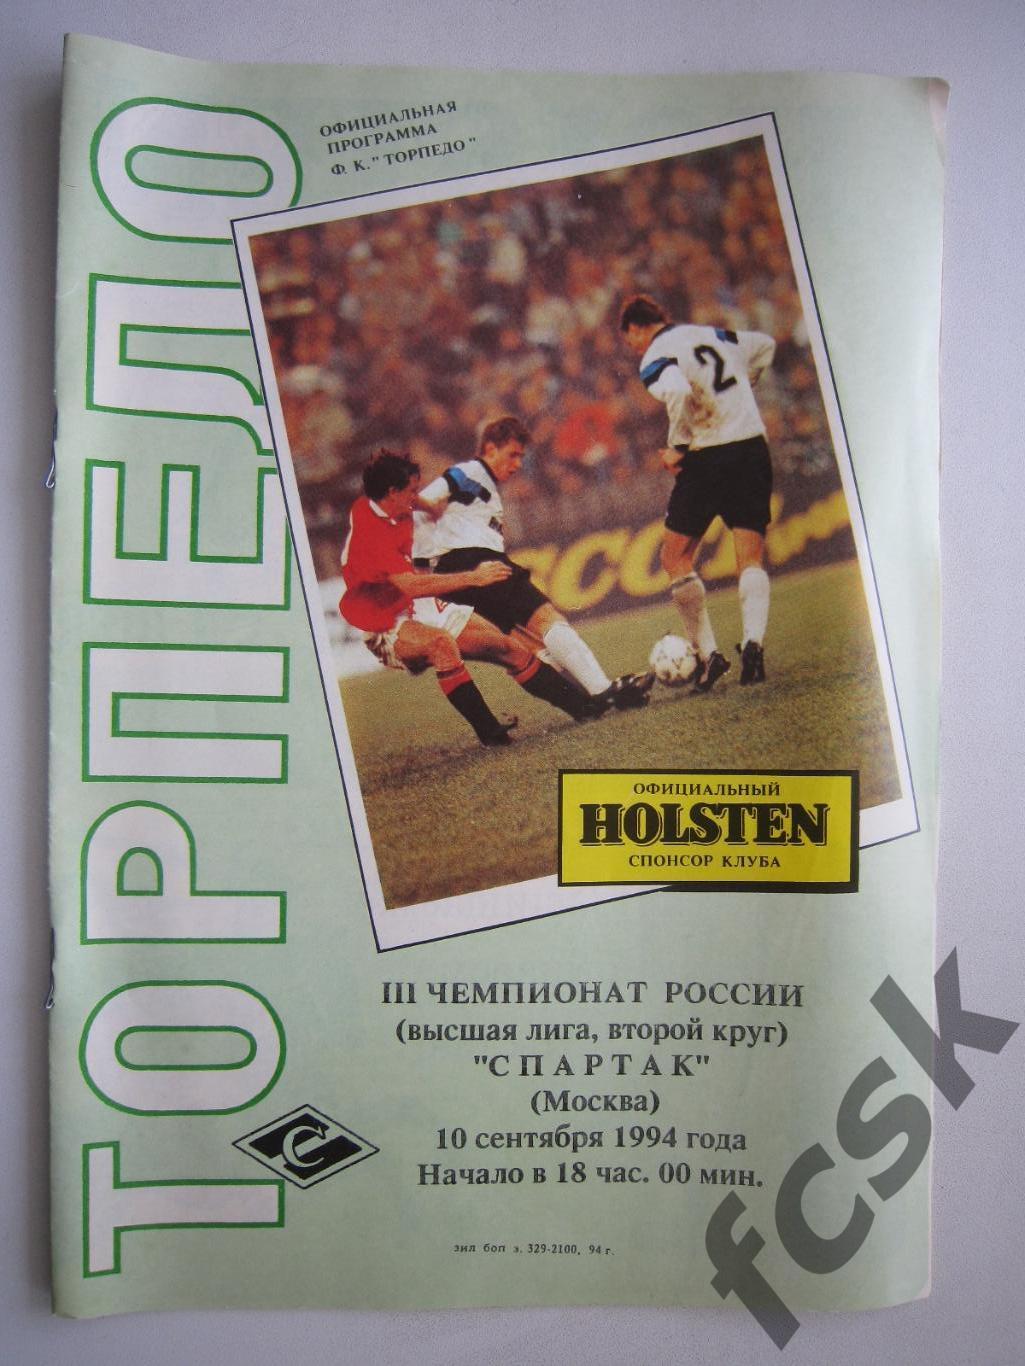 Торпедо Москва - Спартак Москва 10.09.1994 (ф)